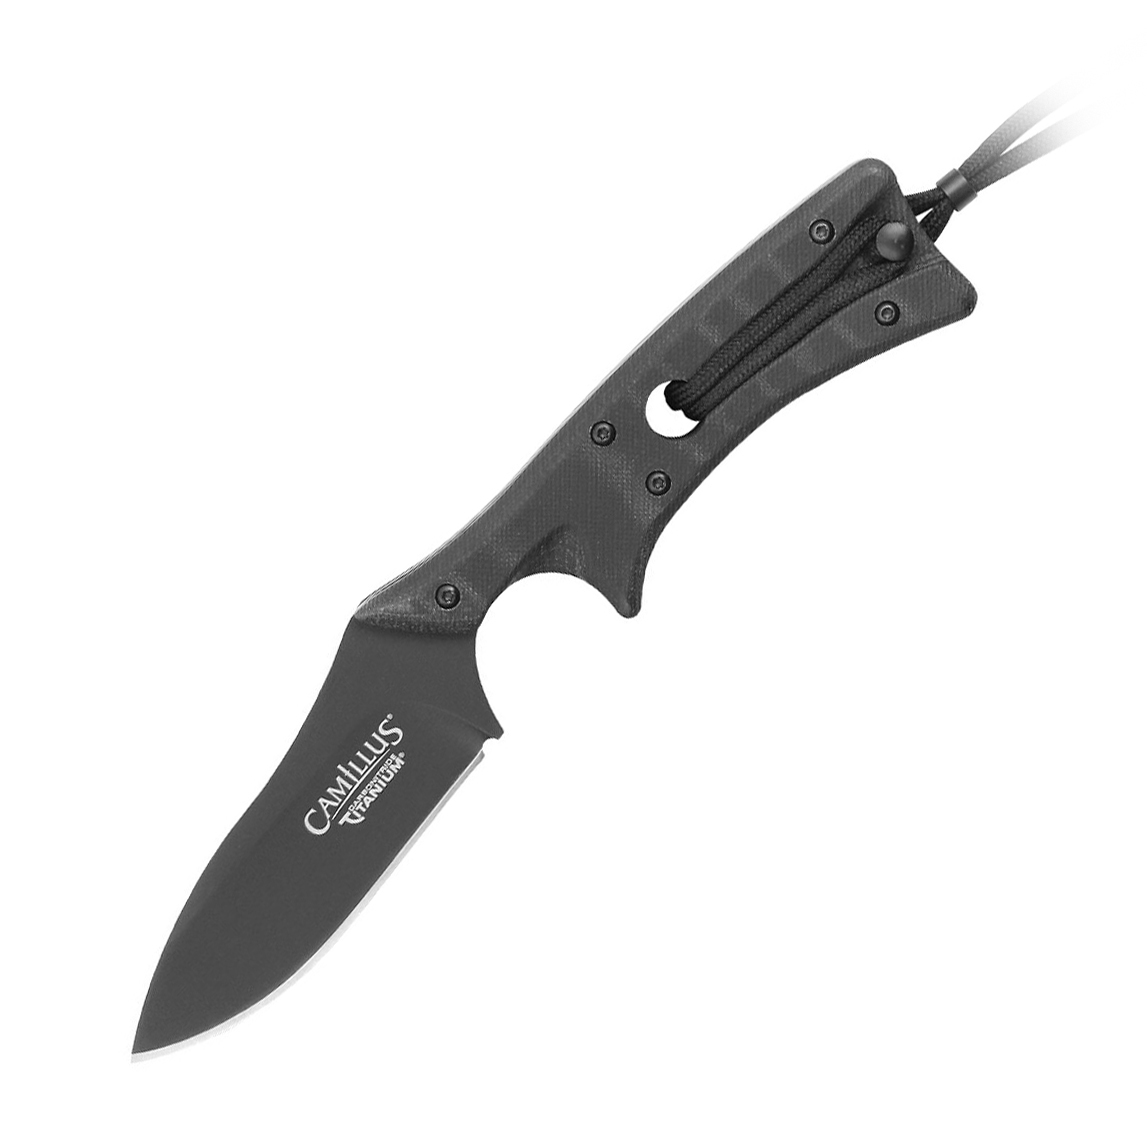 Нож с фиксированным клинком Camillus Tyrant, сталь D2 Tool Steel, рукоять стеклотекстолит G-10, чёрный